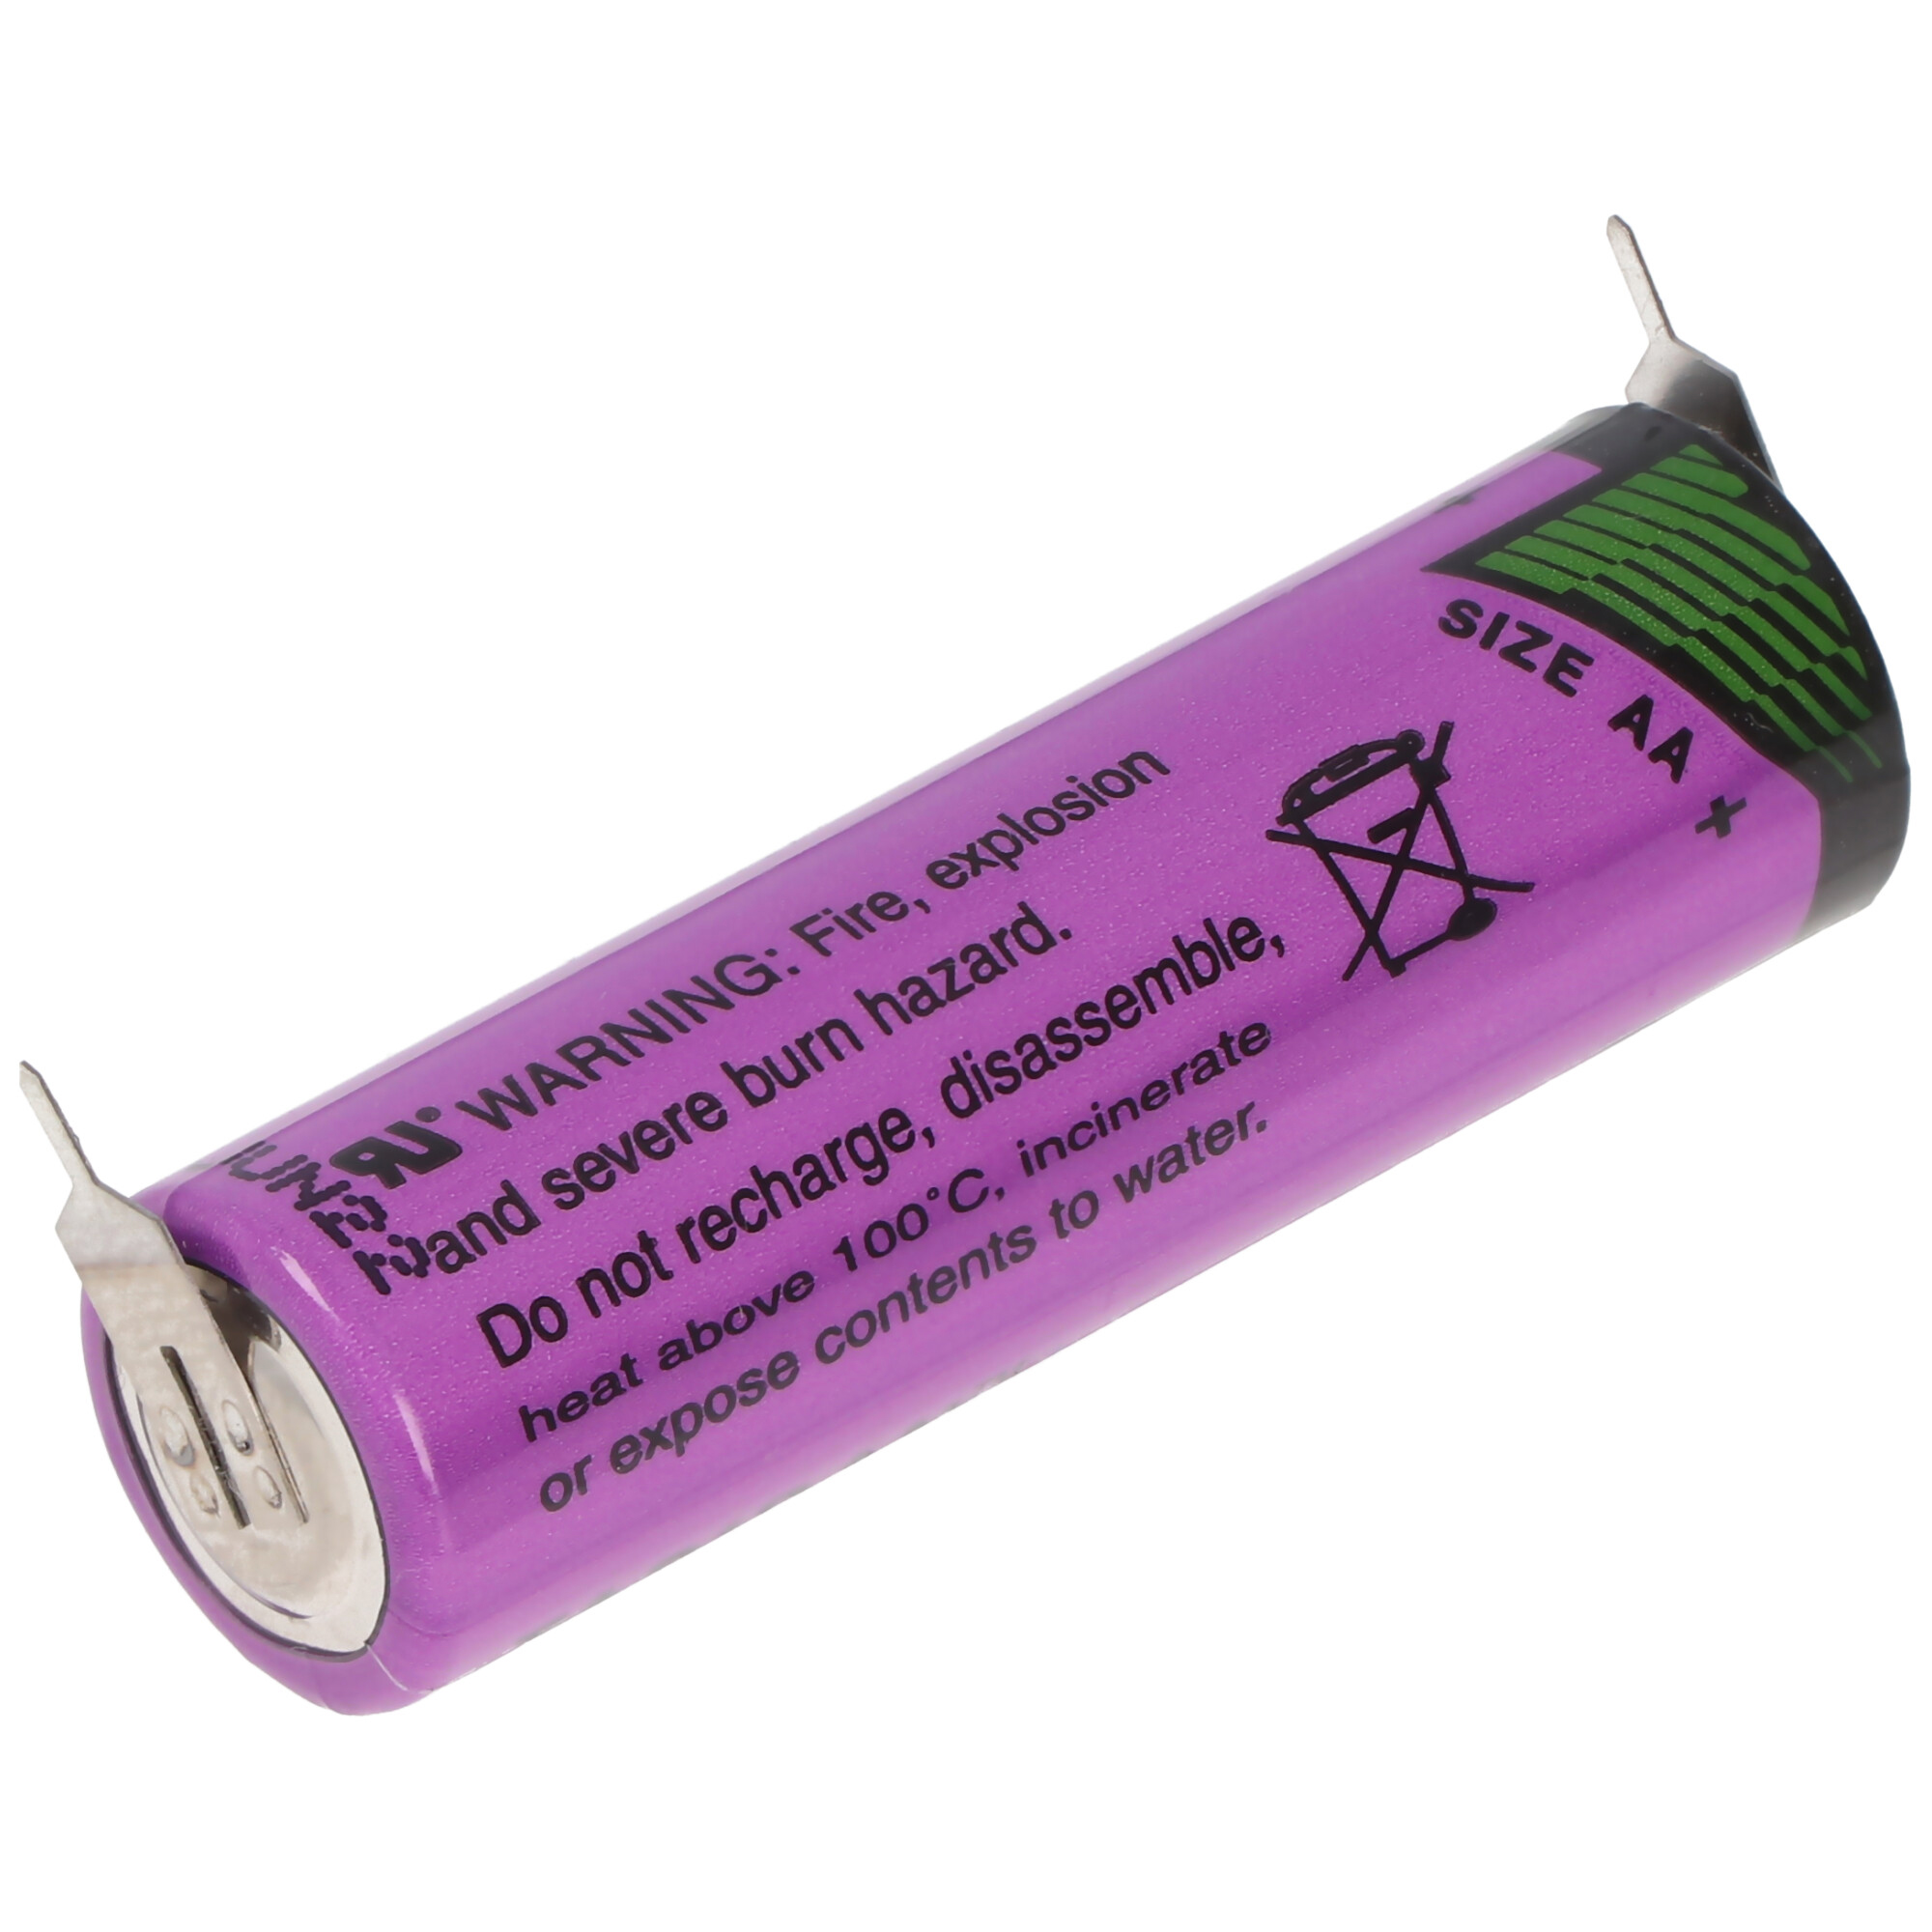 Batterie au lithium-ion AA 1.5V 3300mWh généralement 2000mAh